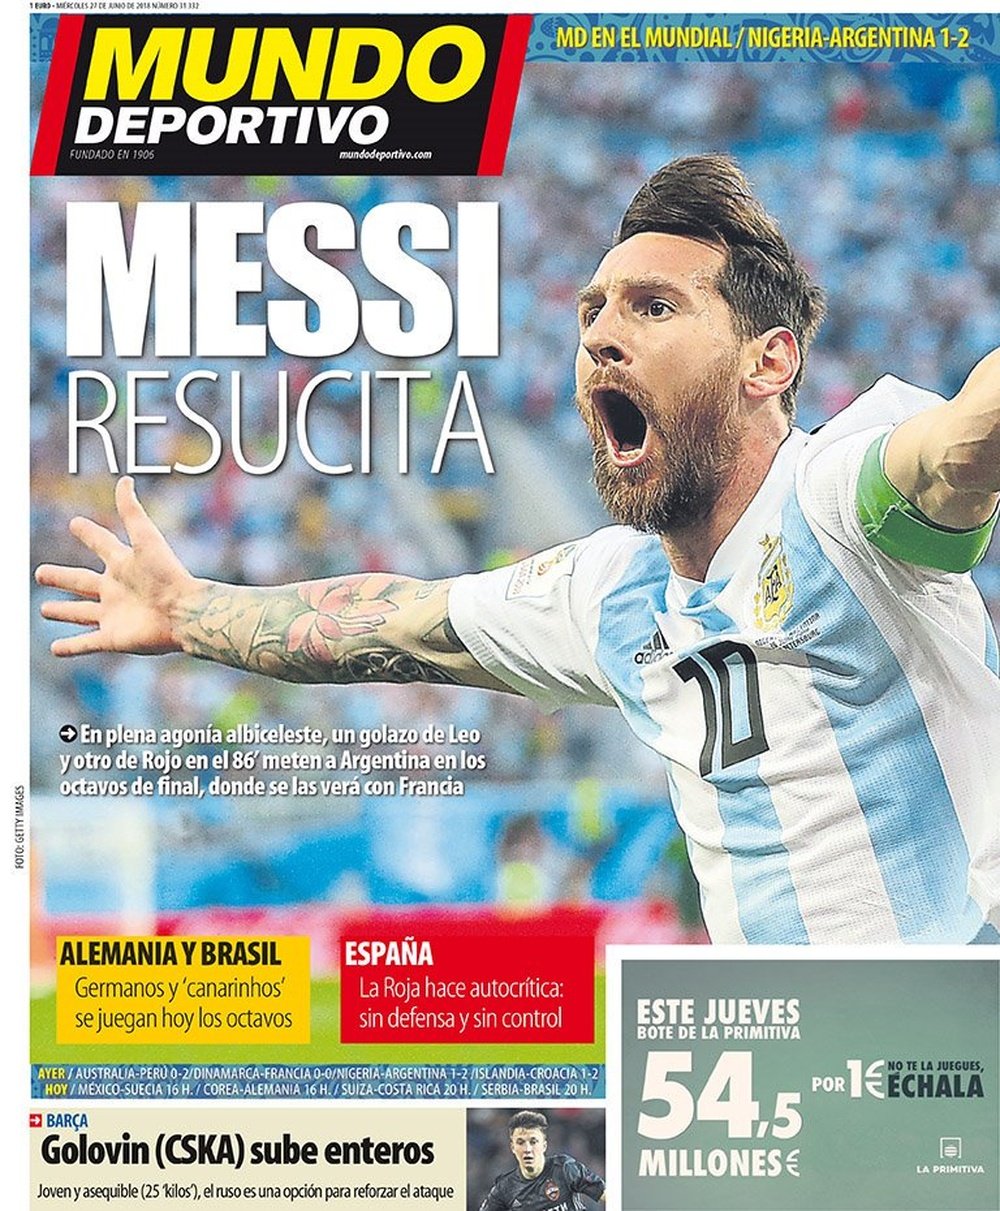 Capa do jornal Mundo Deportivo, da Espanha 27-06-18. Mundo Deportivo